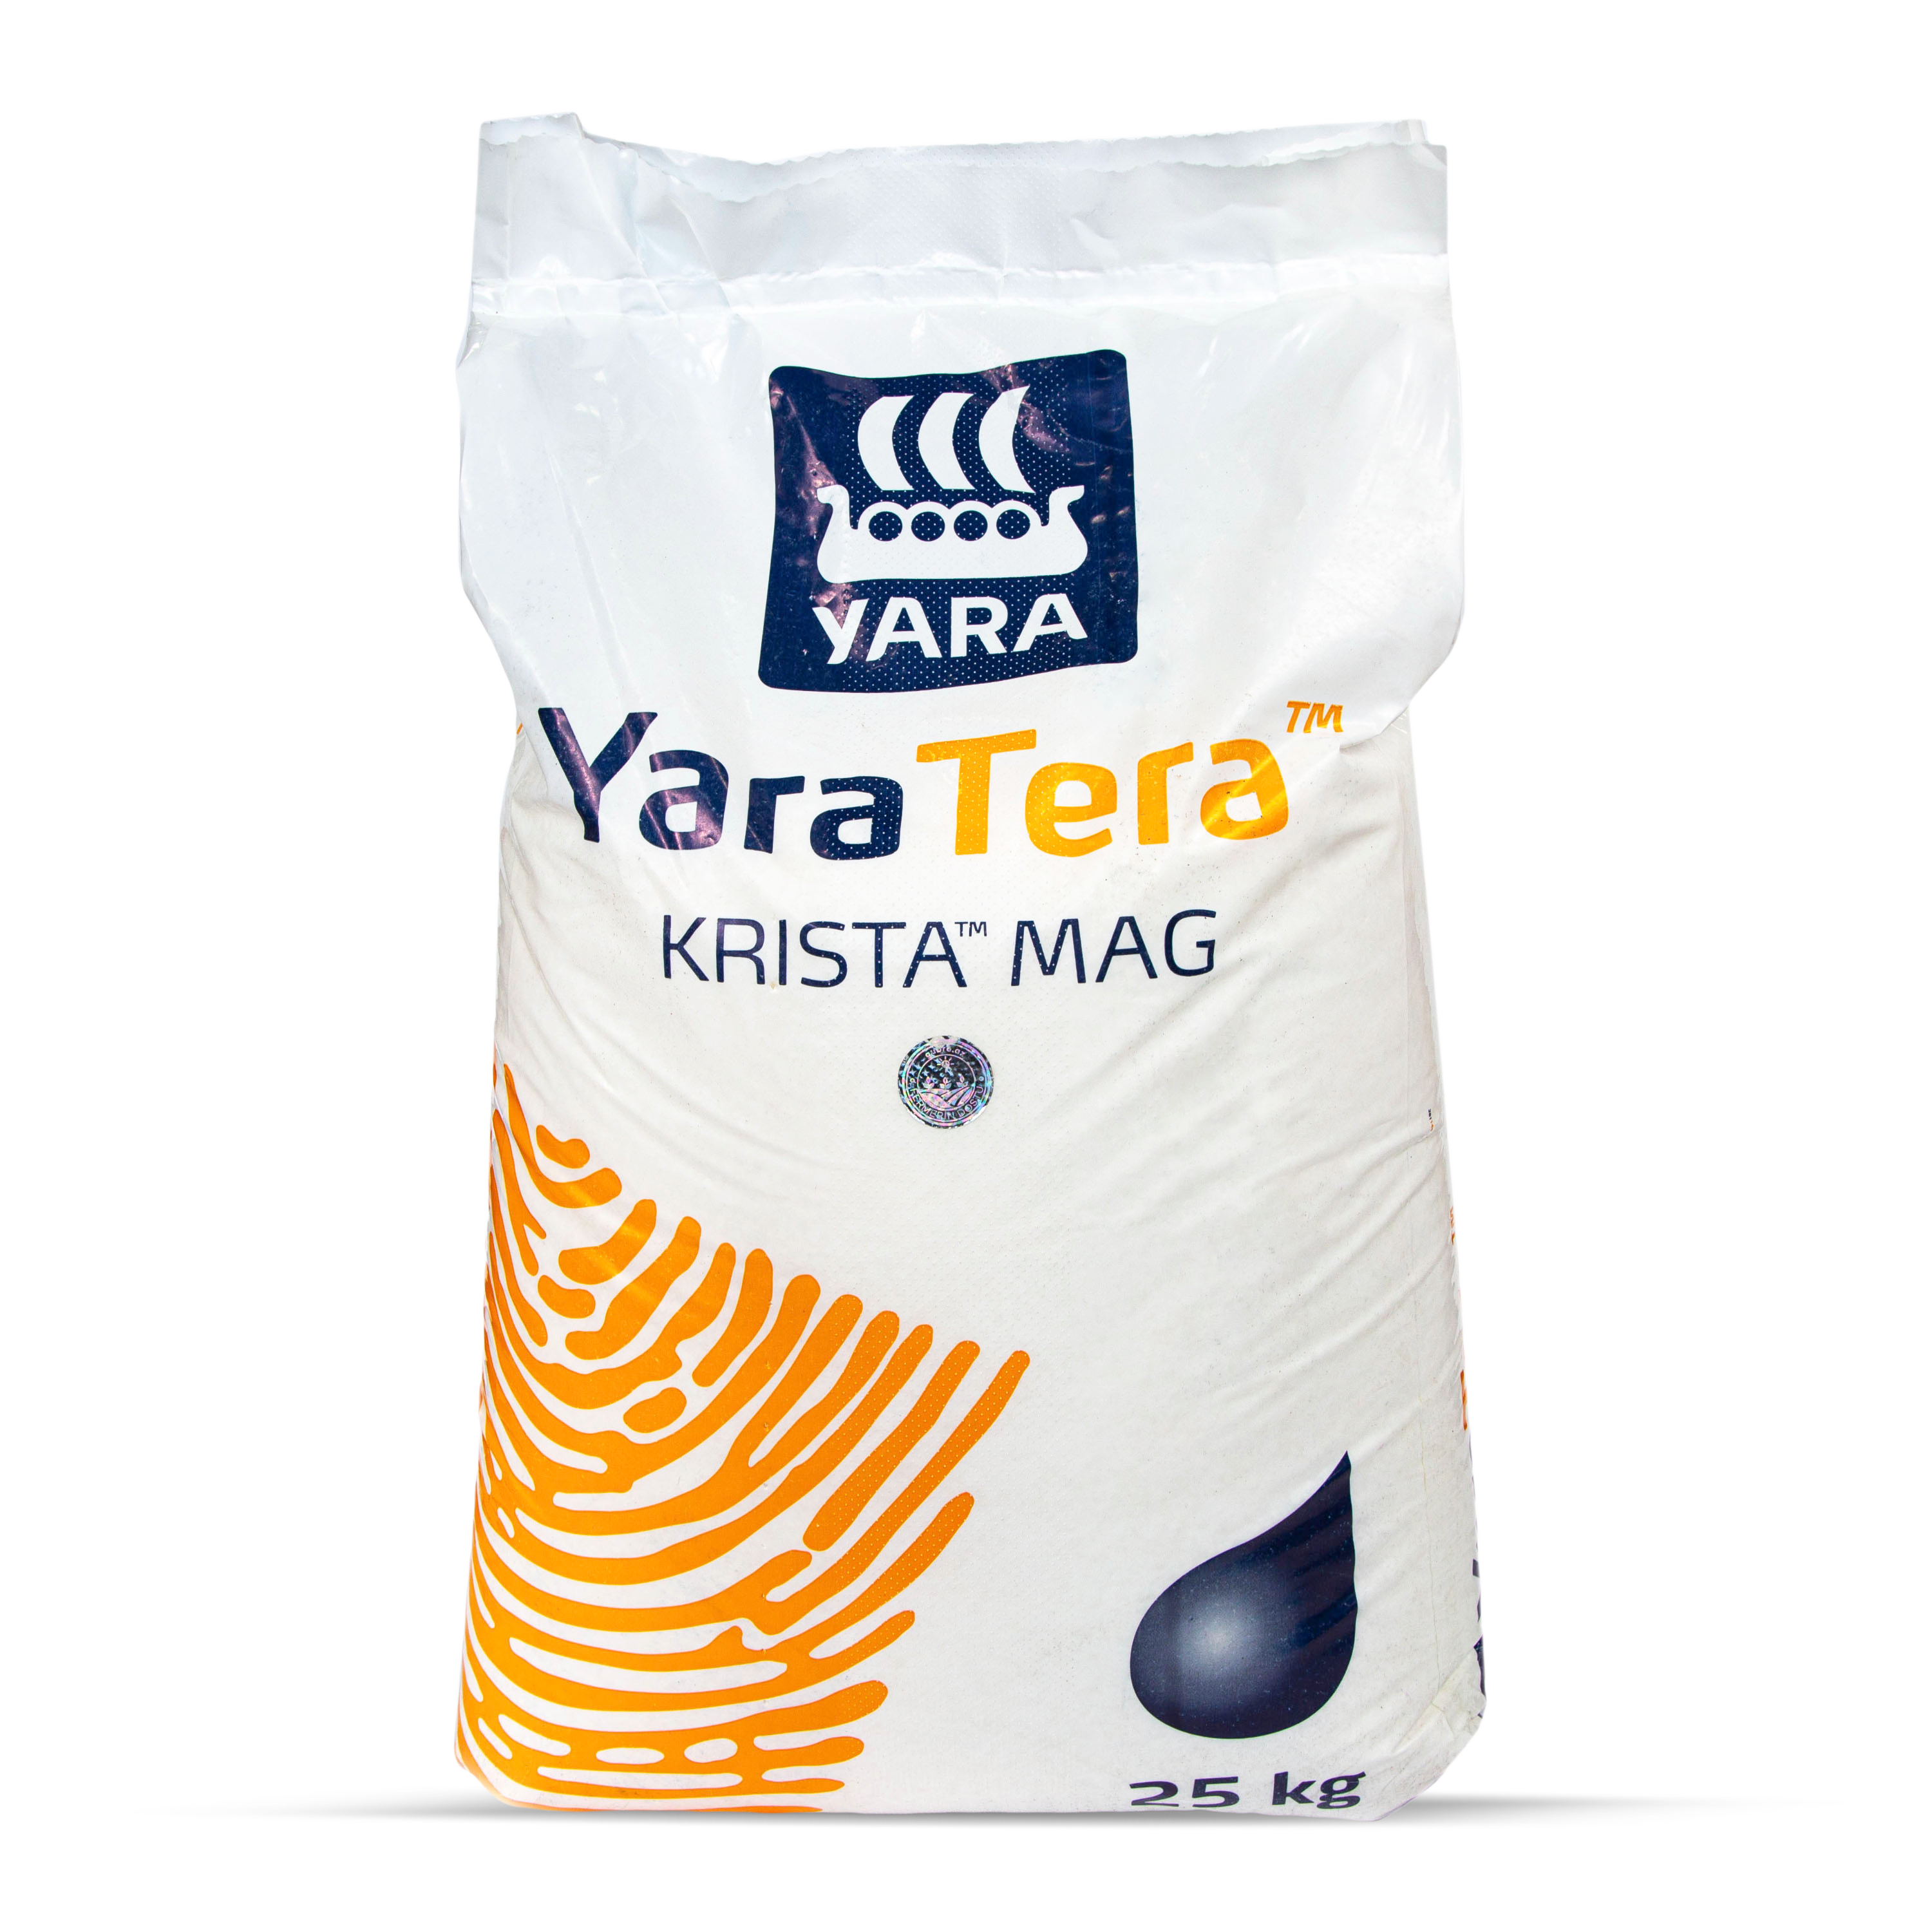 Maqnezium nitrat YaraTera Krista MAG / 11-0-0 + 15 MgO / Yara Suomi Oy  / 25 kq, kq